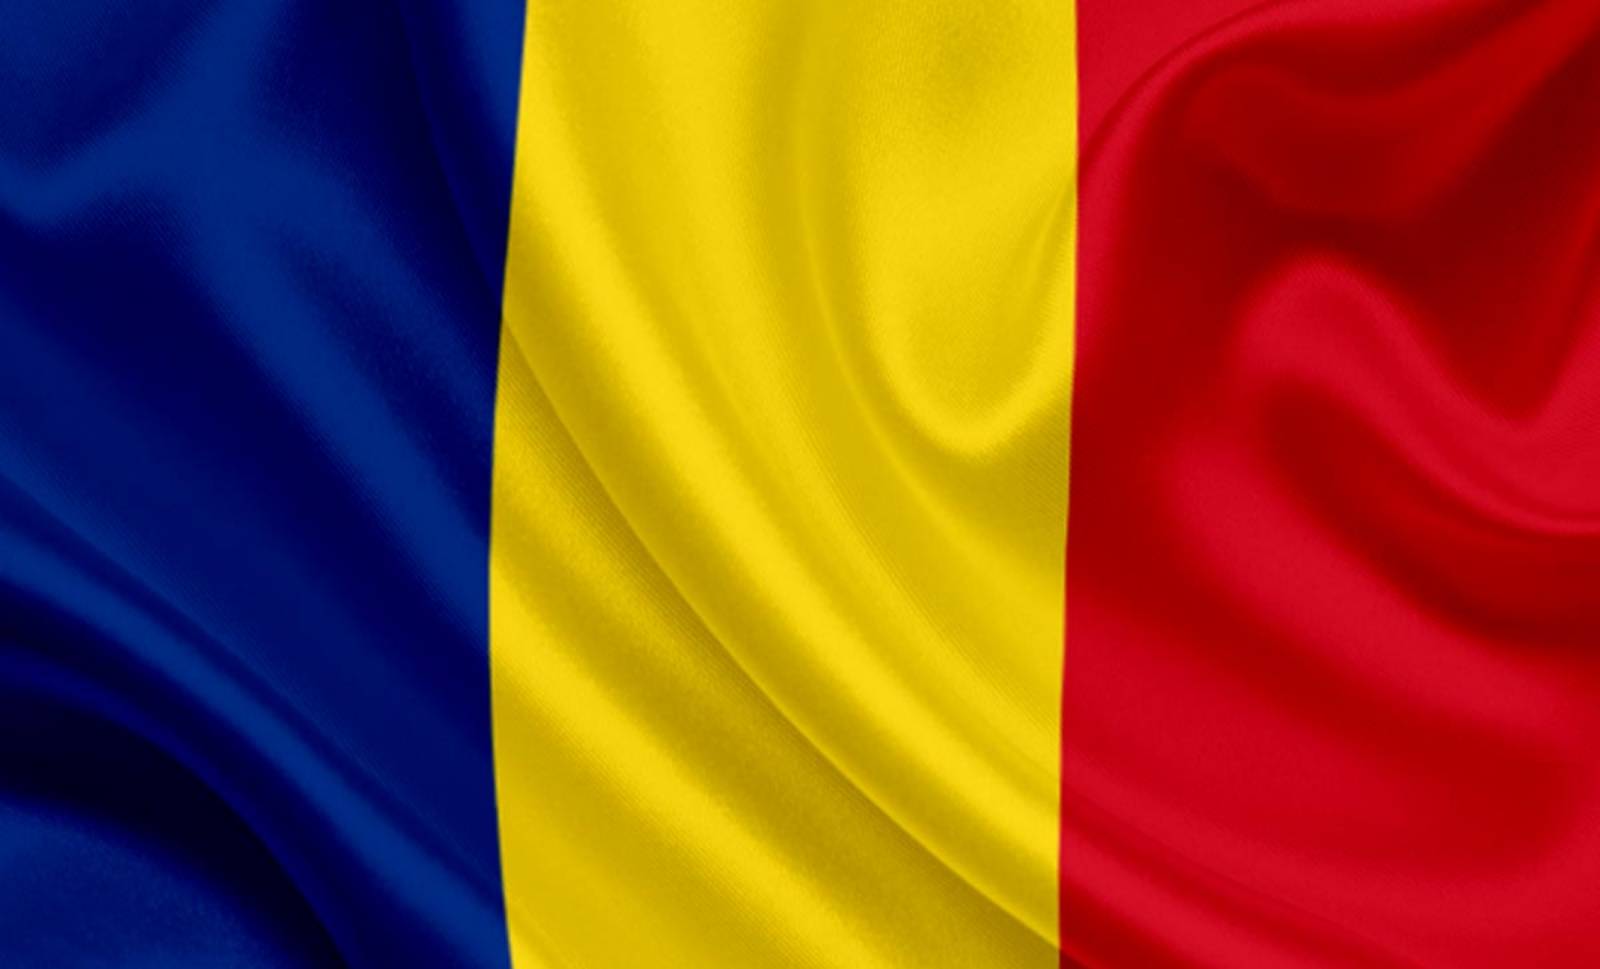 den rumænske regering er i alarmberedskab